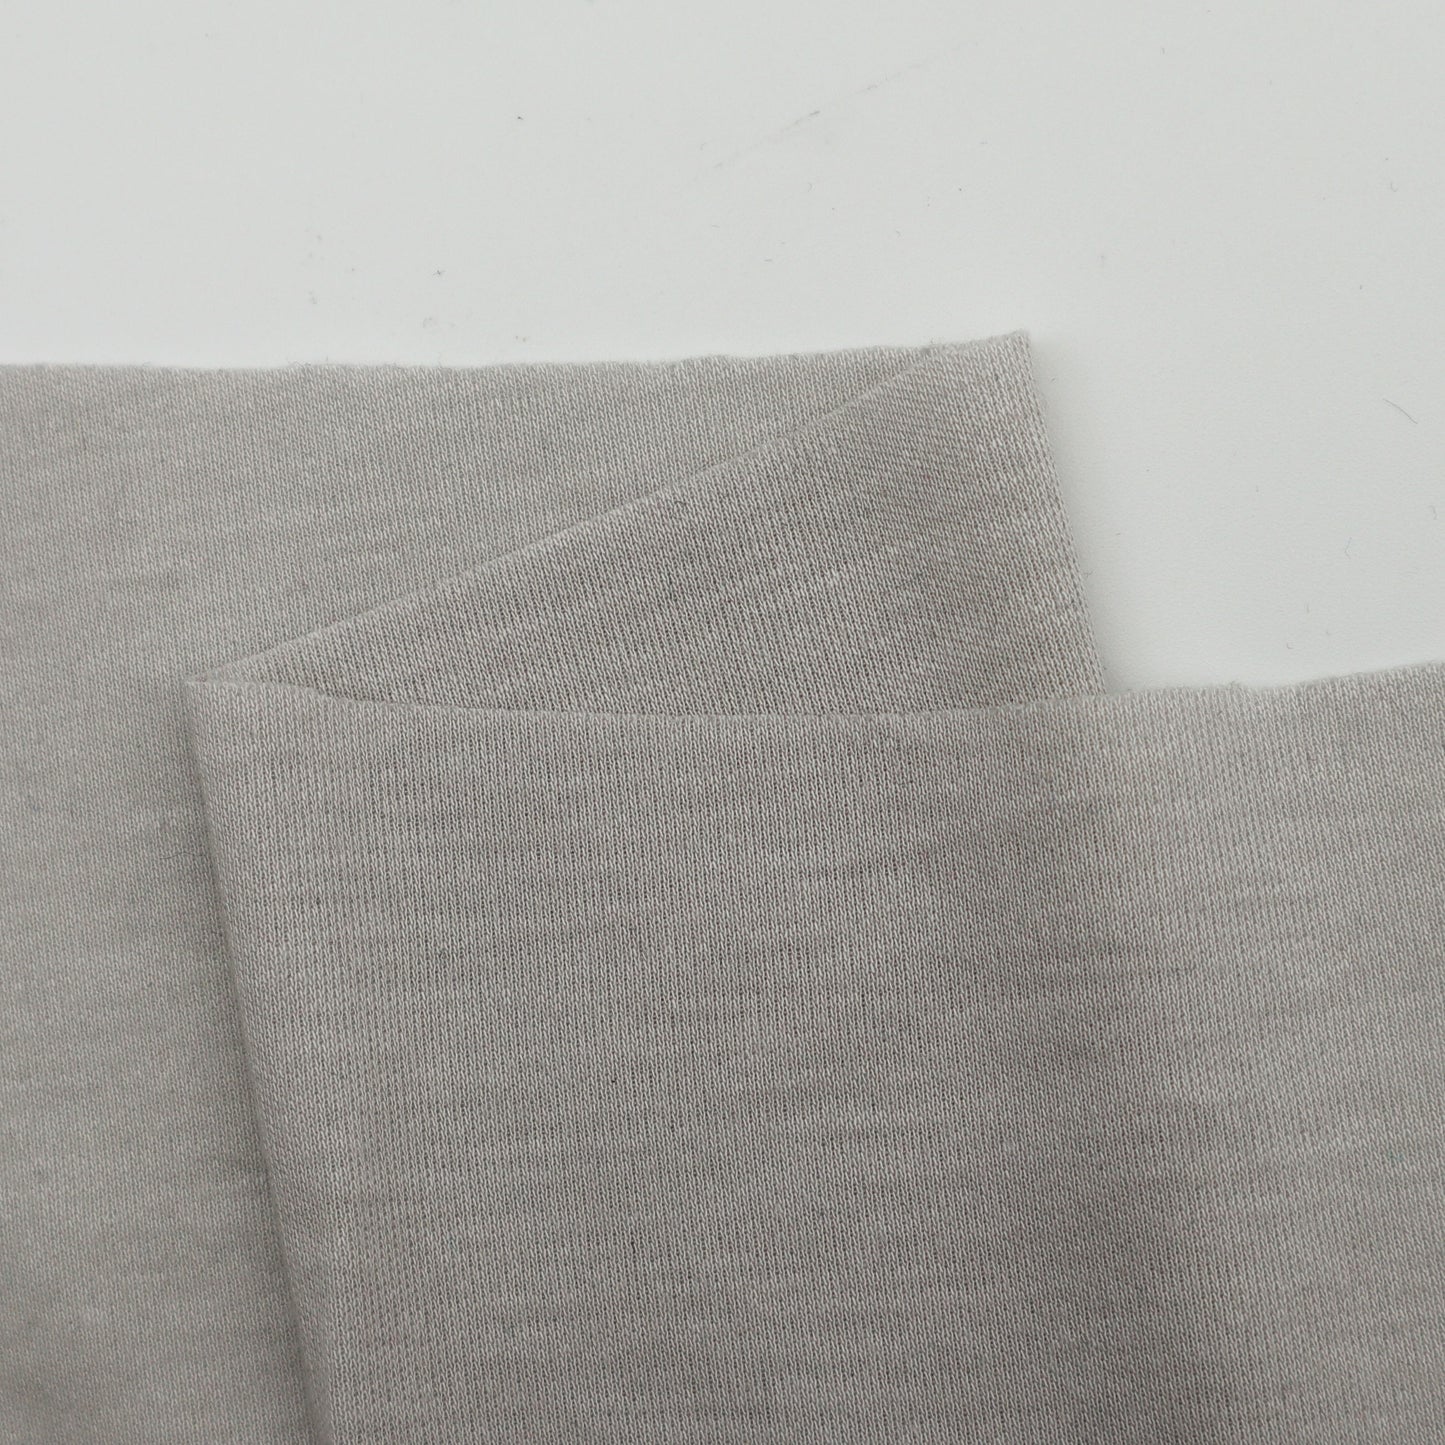 Lightweight Single Knit in Emery (Grey)